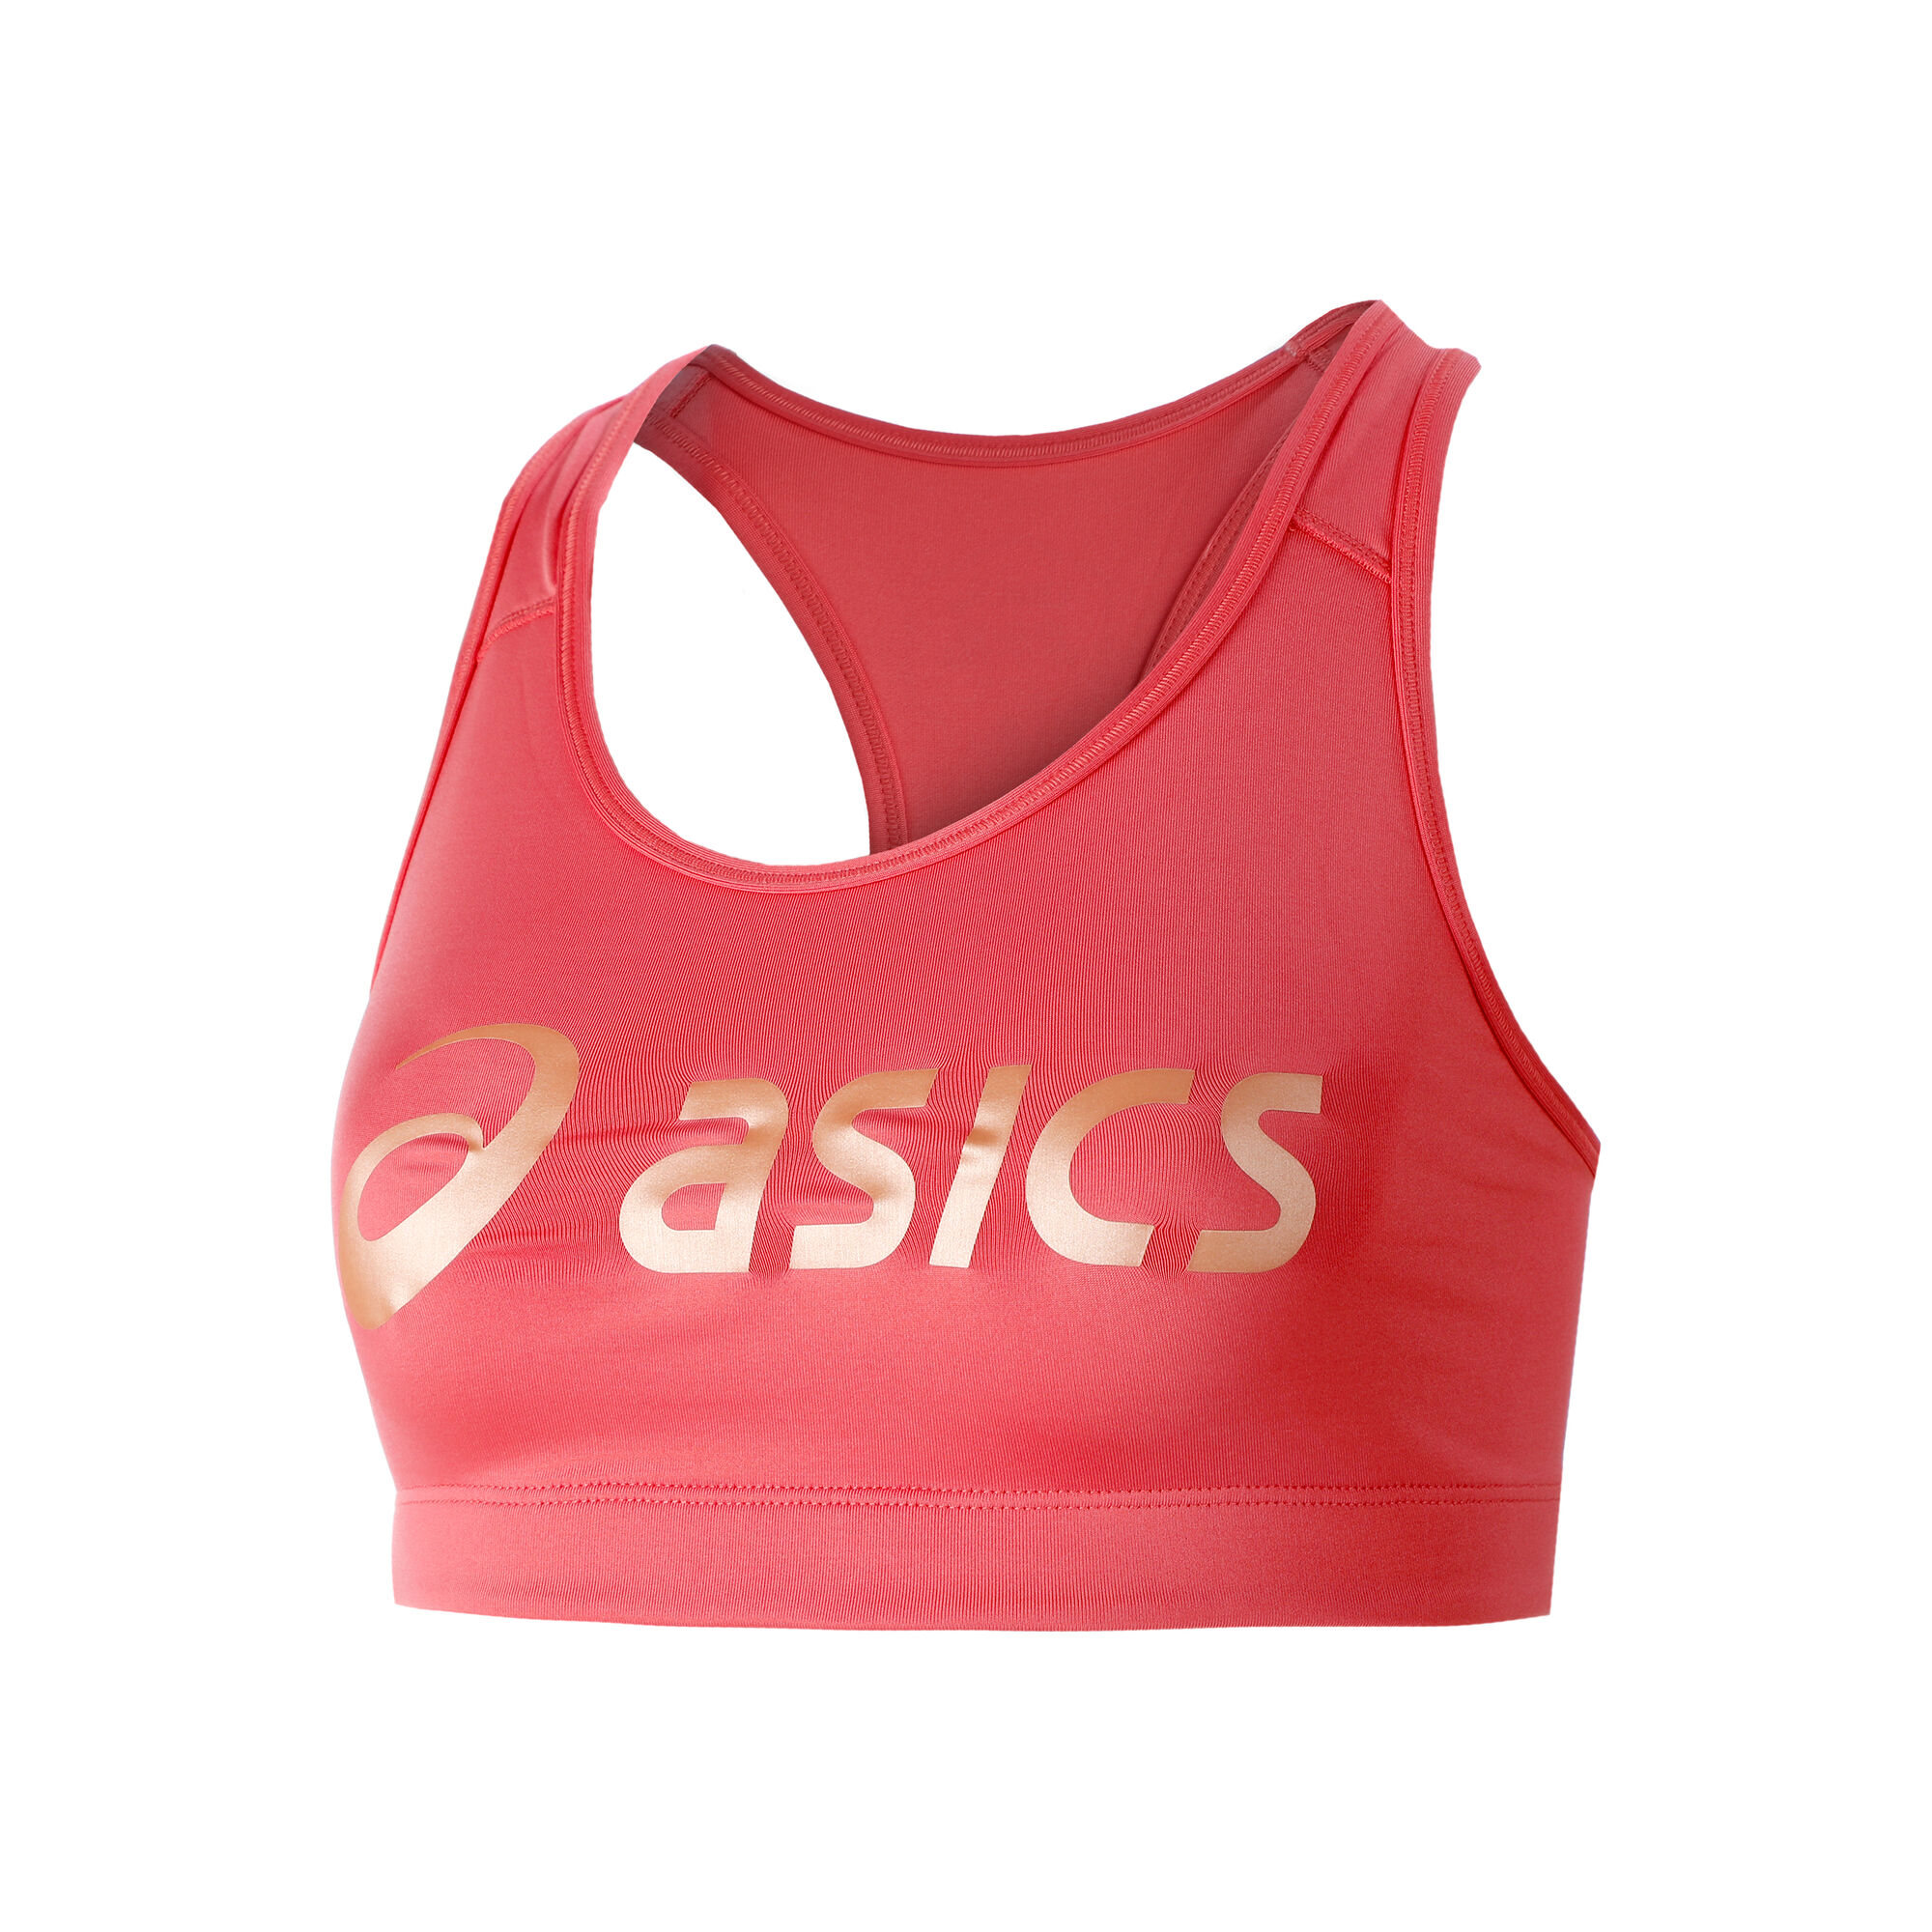 Buy ASICS Sakura Spiral Sports Bras Women Pink, Apricot online